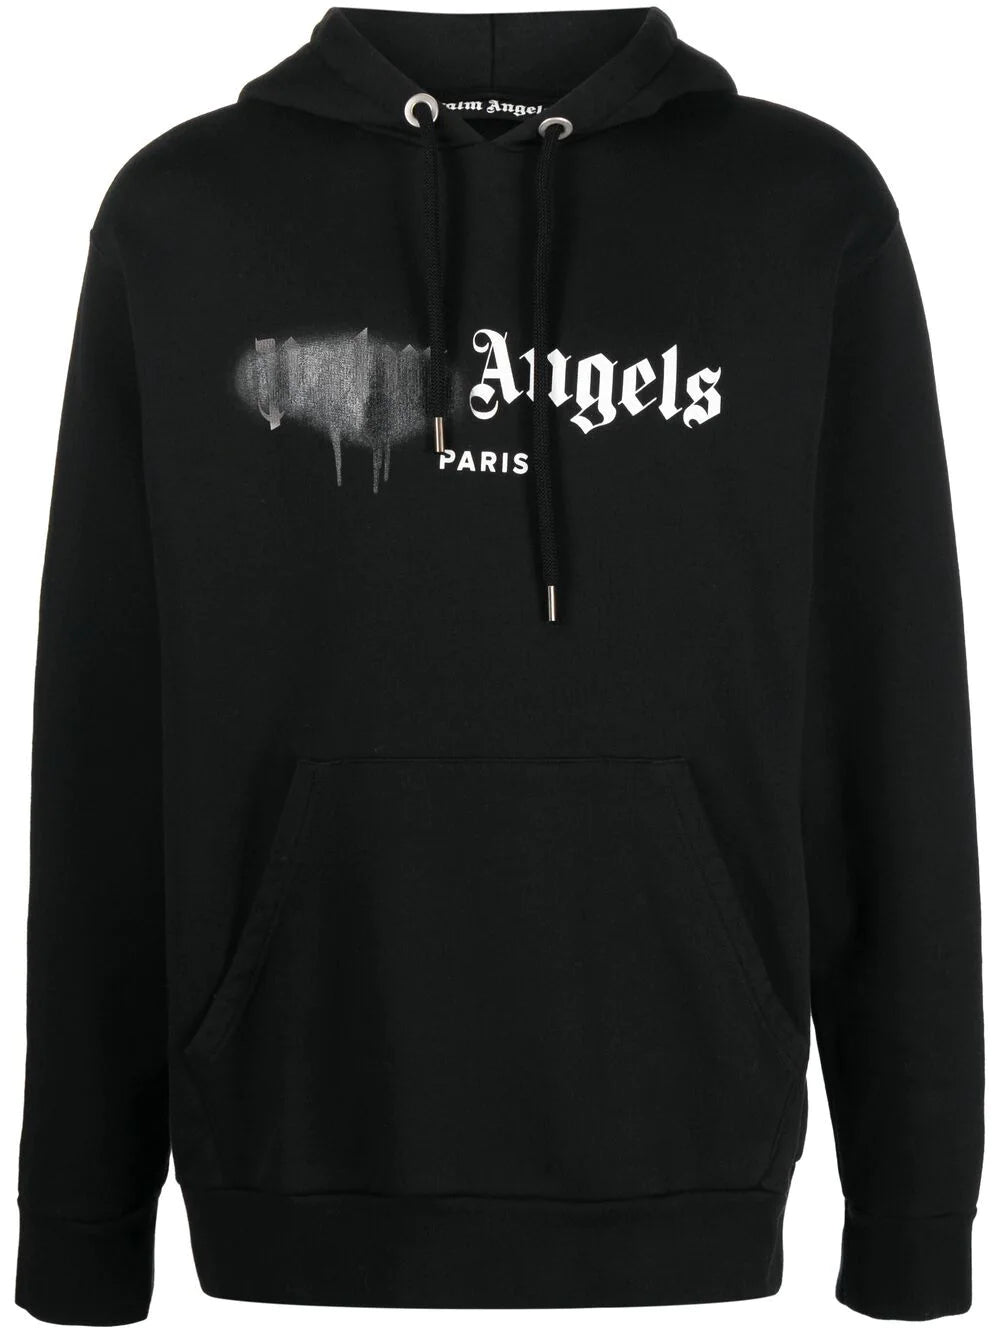 Palm Angels Paris Sprayed Logo Black Hoodie